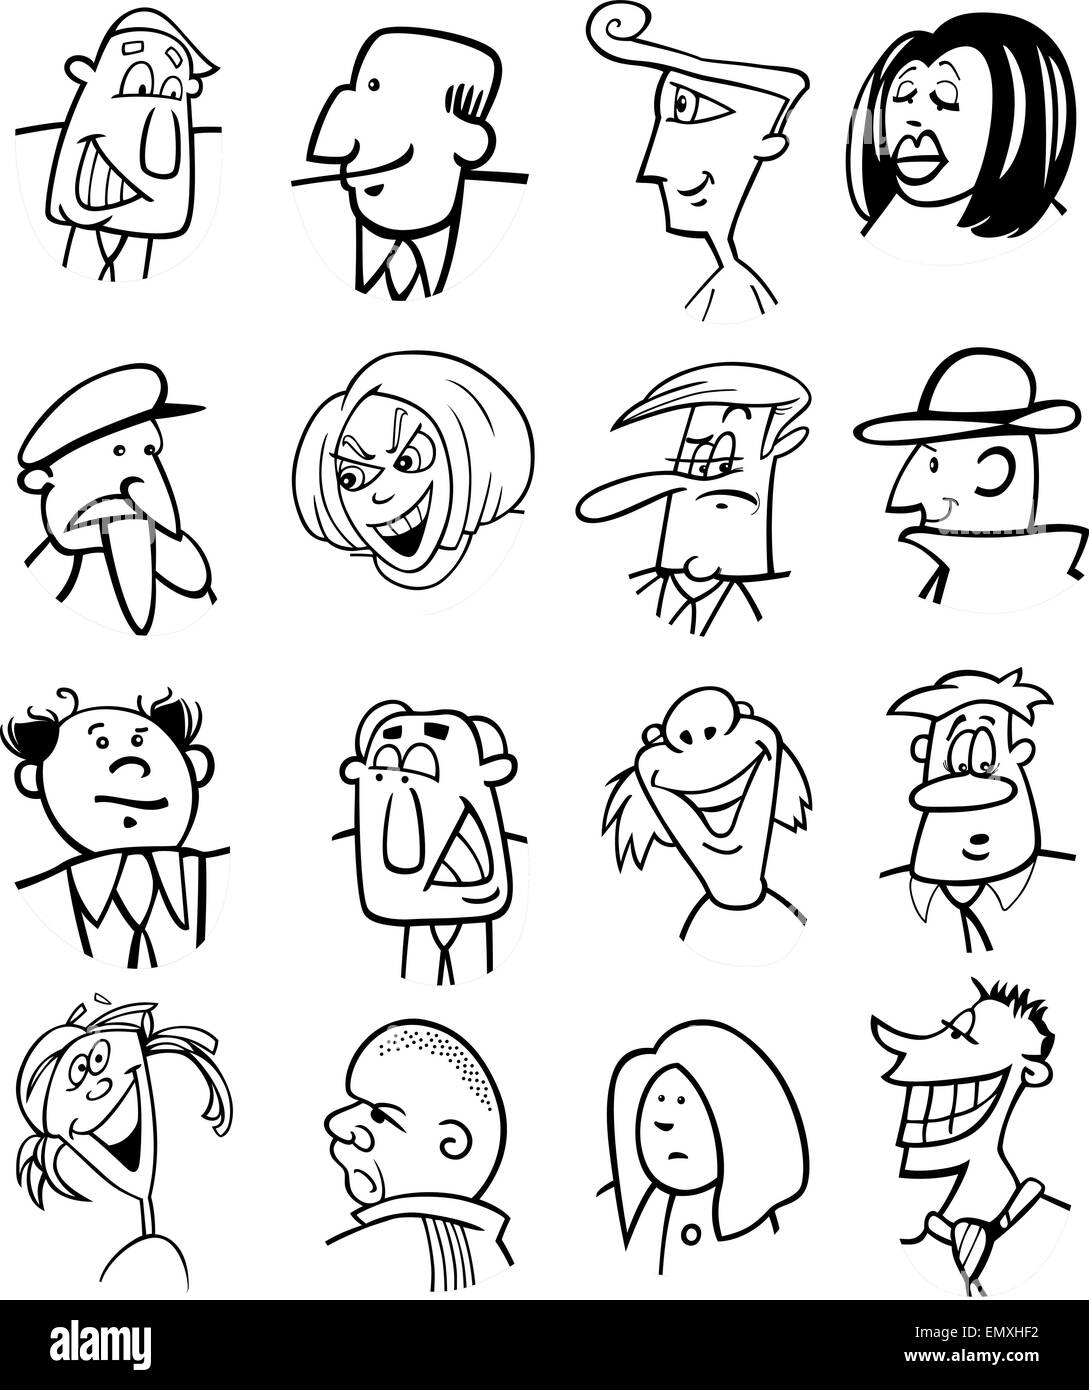 Schwarz / Weiß Cartoon Illustration von Menschen Zeichen steht Stock Vektor